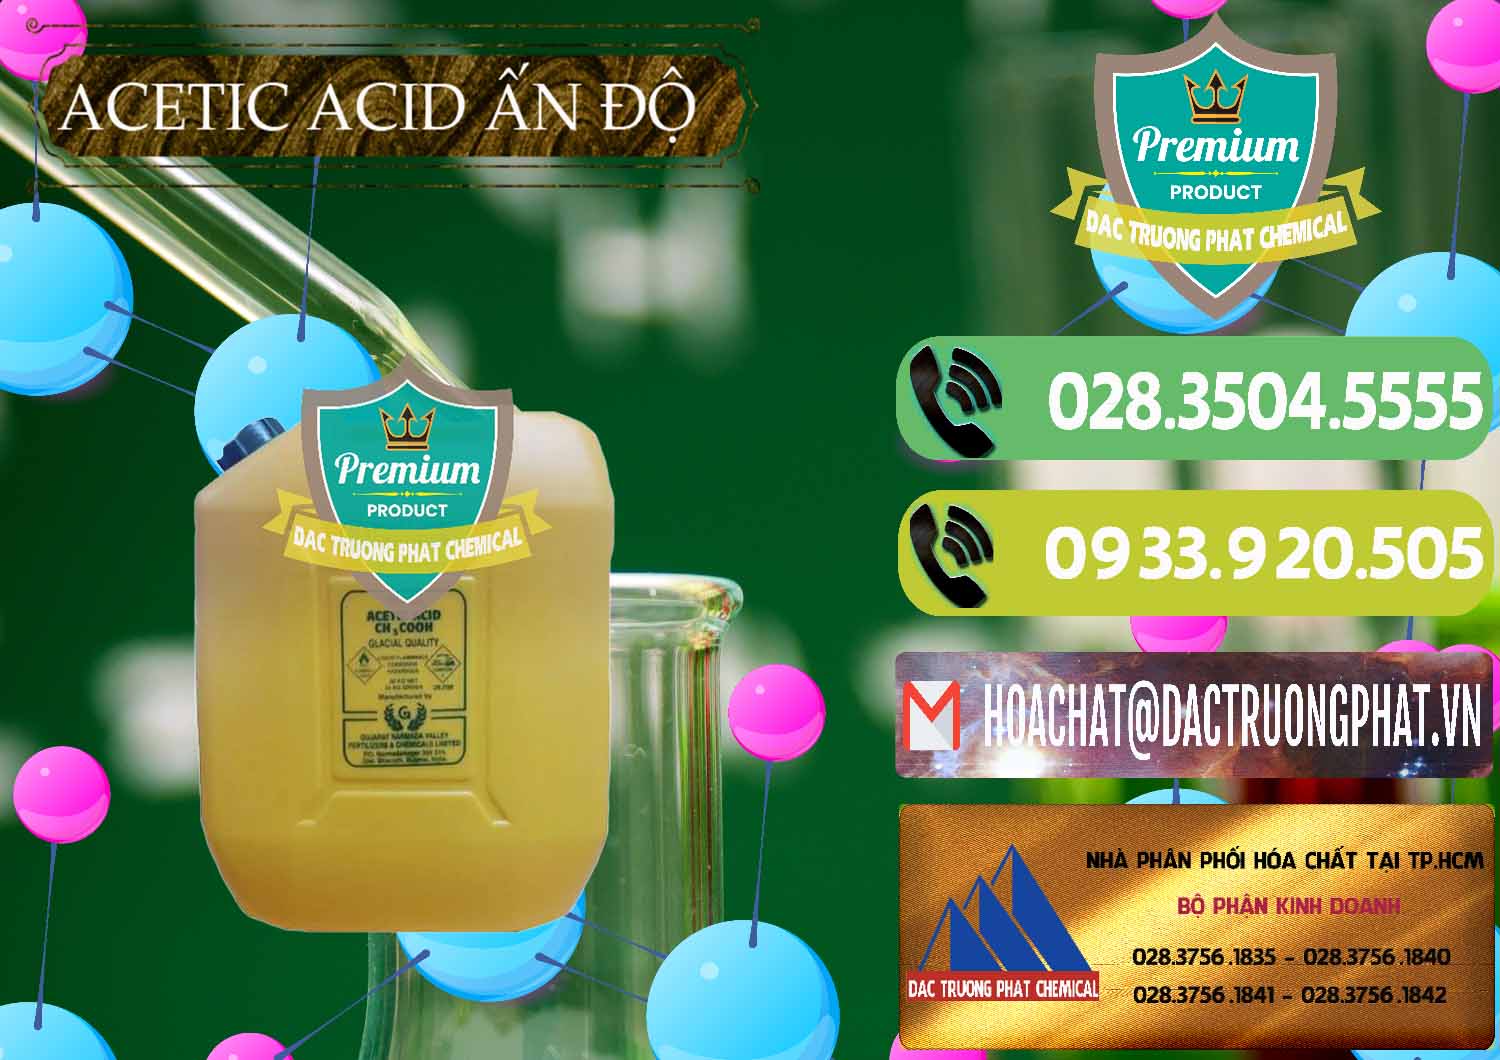 Nơi kinh doanh và bán Acetic Acid – Axit Acetic Ấn Độ India - 0359 - Công ty chuyên kinh doanh ( cung cấp ) hóa chất tại TP.HCM - hoachatmientay.vn